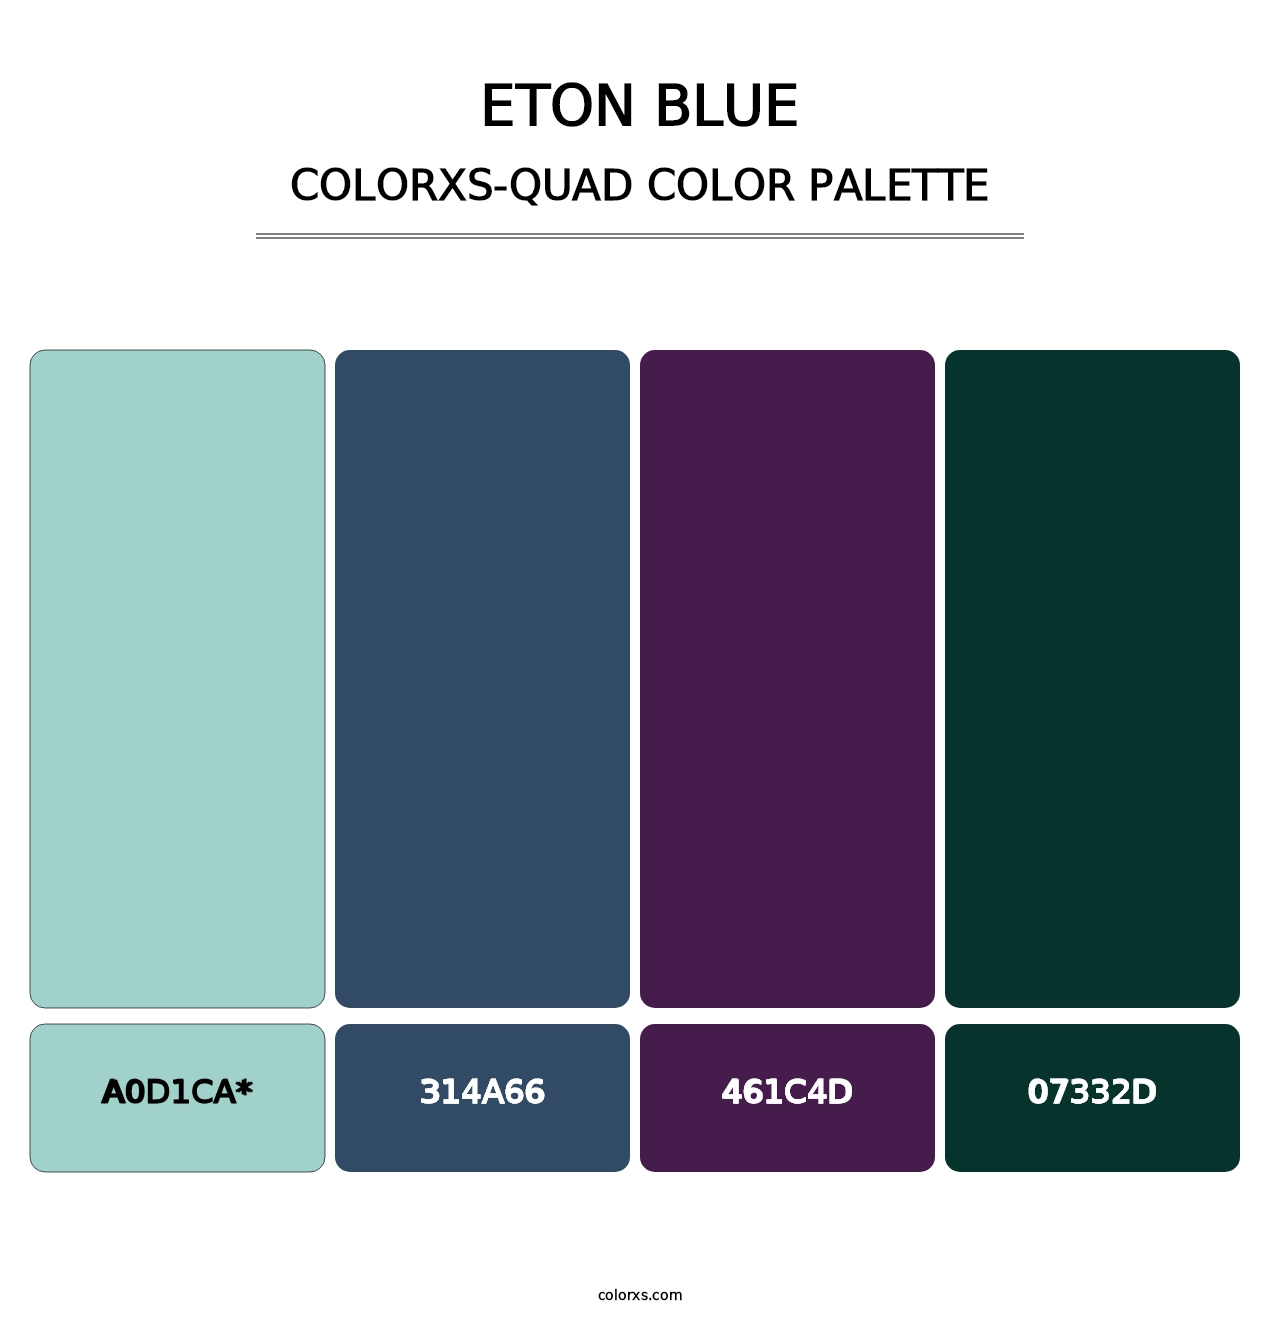 Eton blue - Colorxs Quad Palette